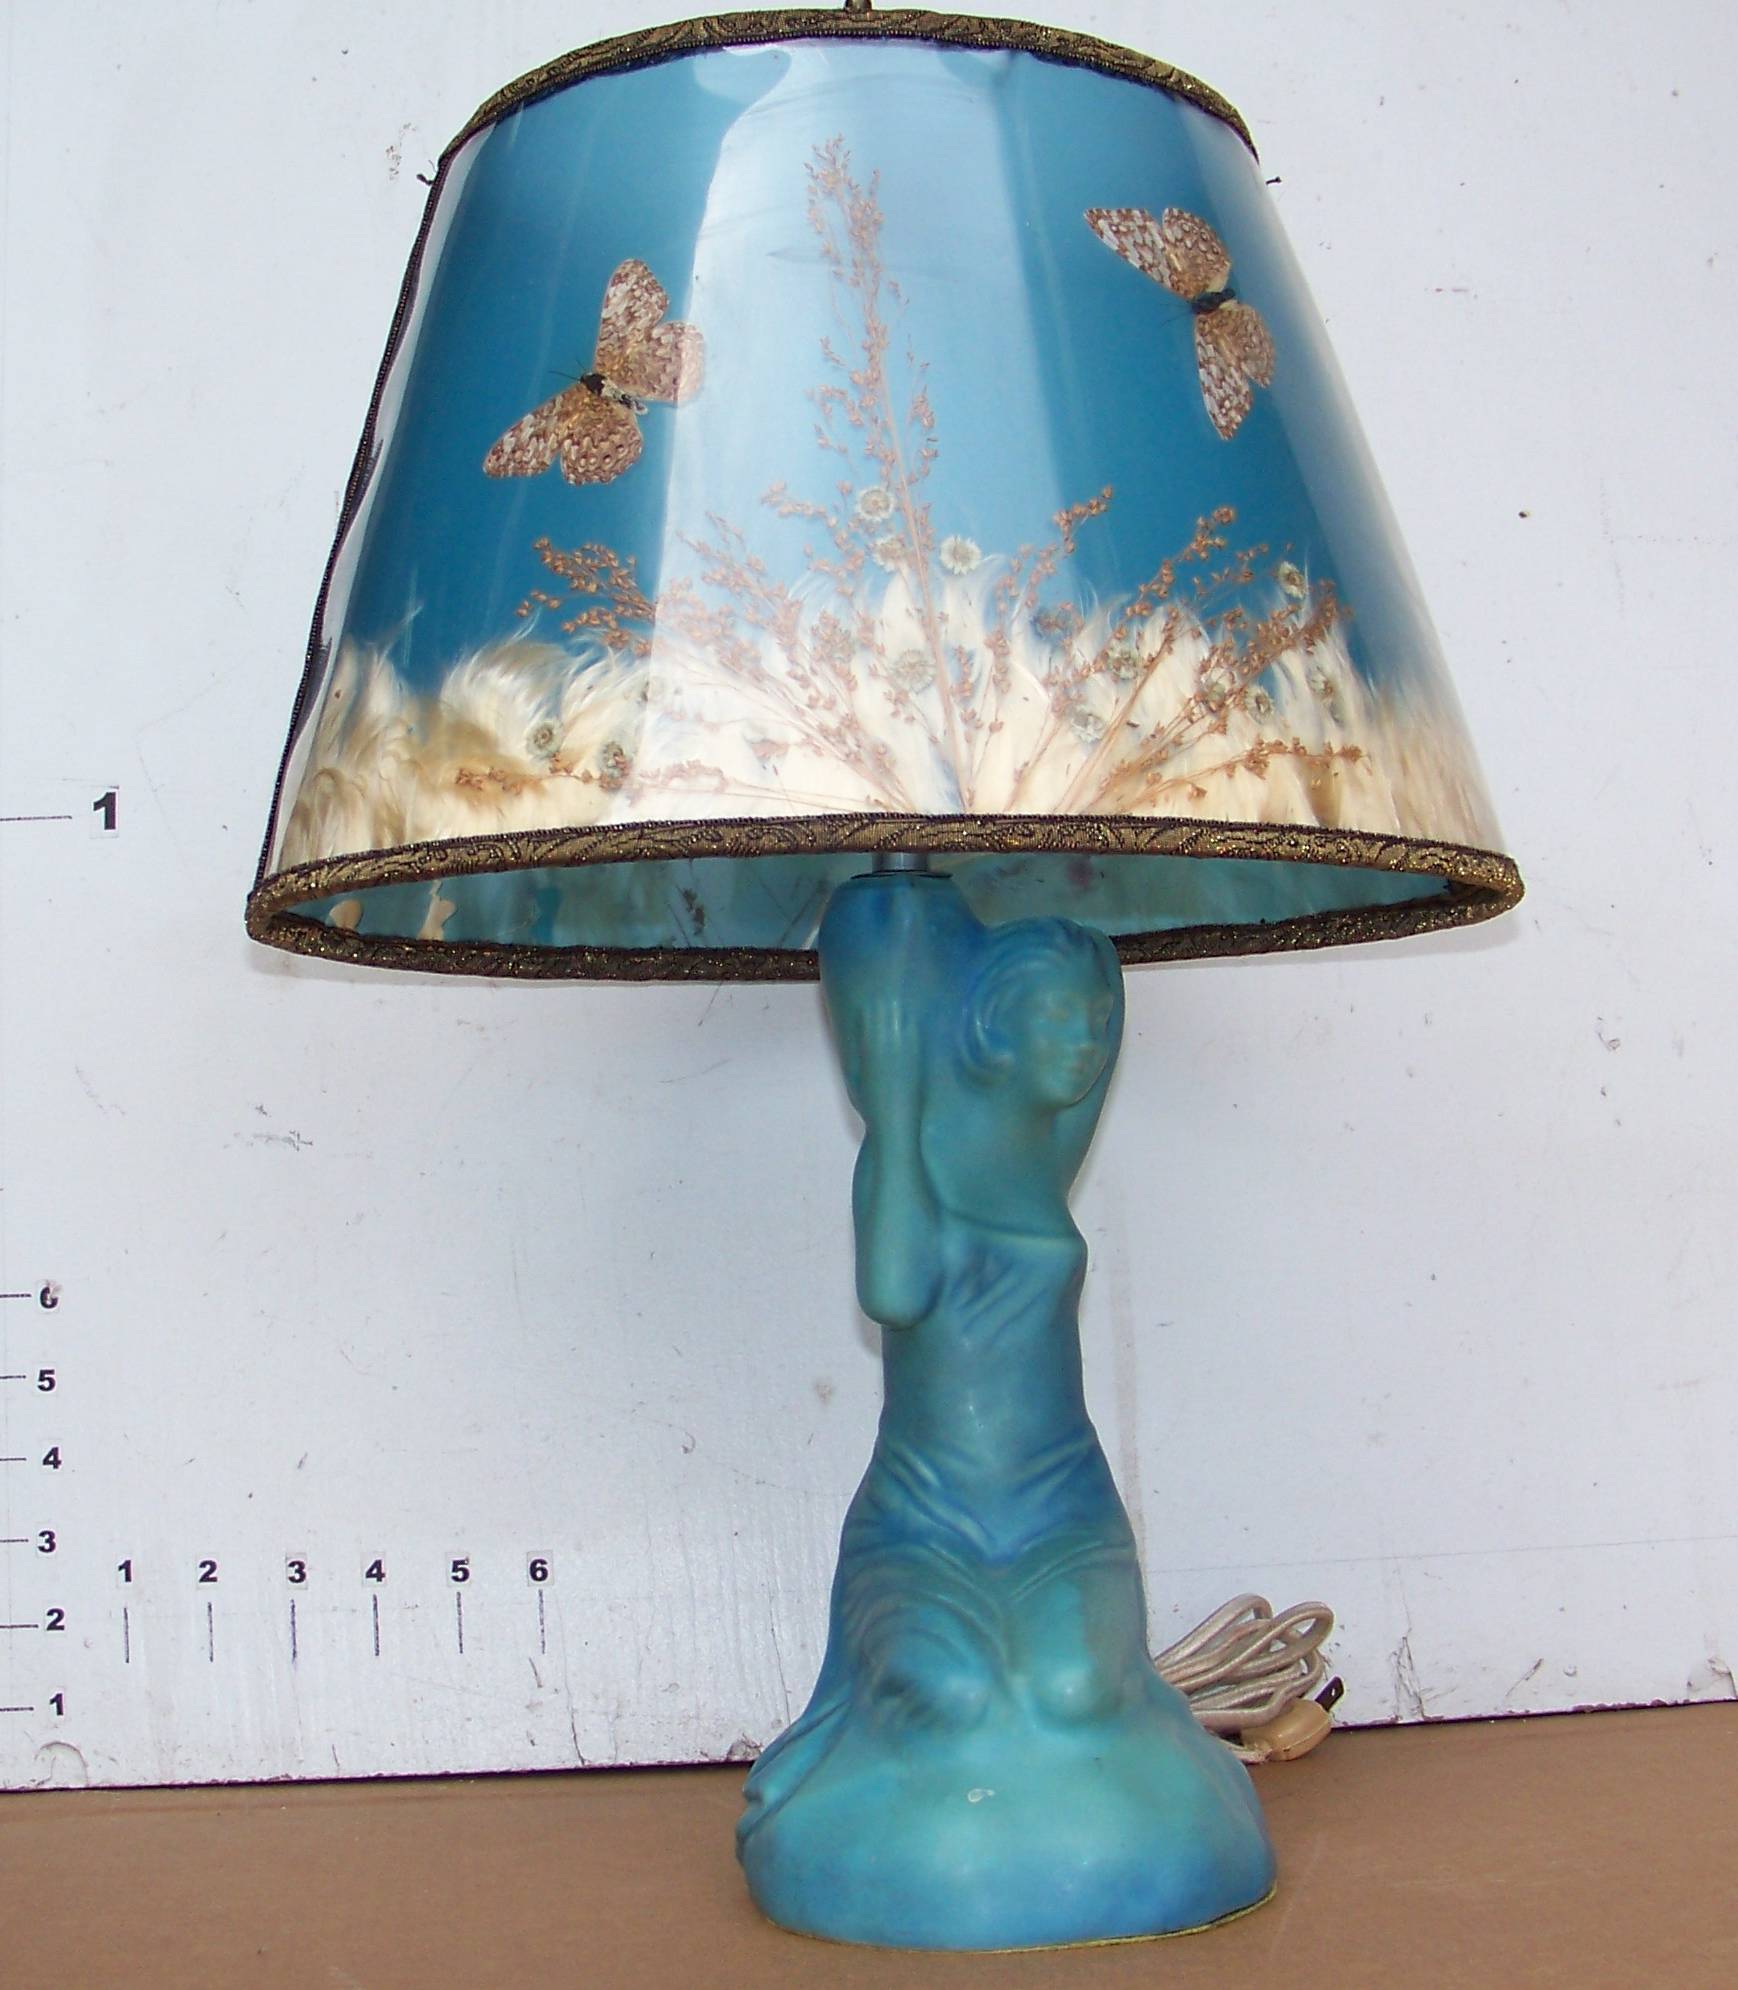 van briggle pottery lamp